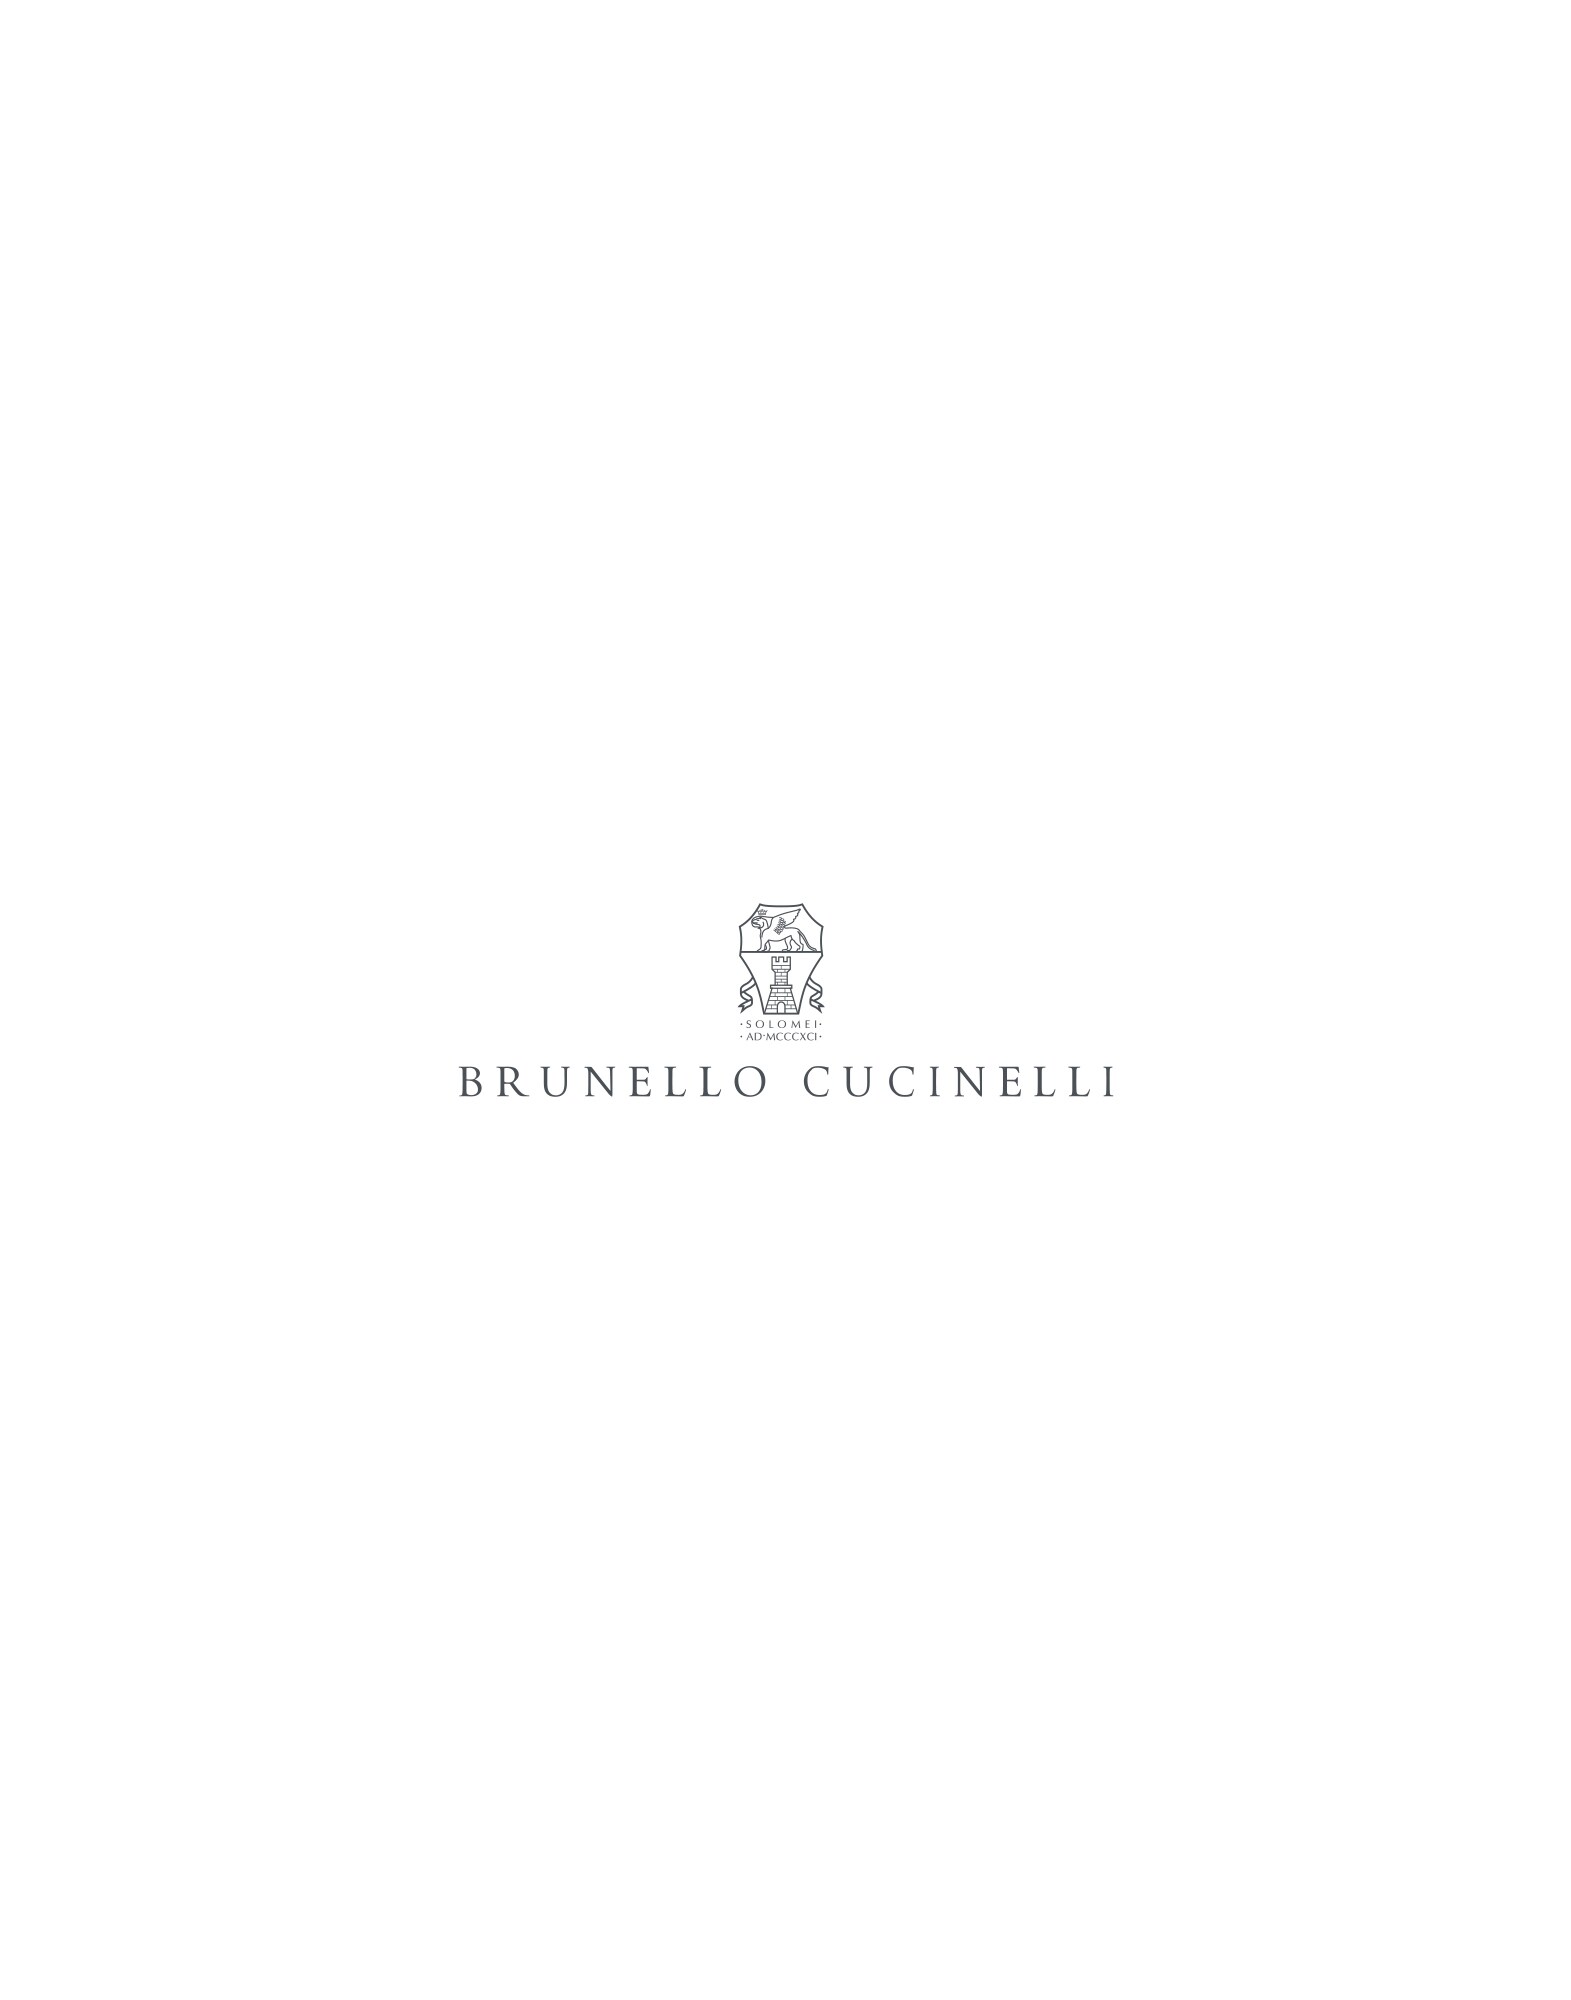 Oxford shirt White Man -
                        Brunello Cucinelli
                    